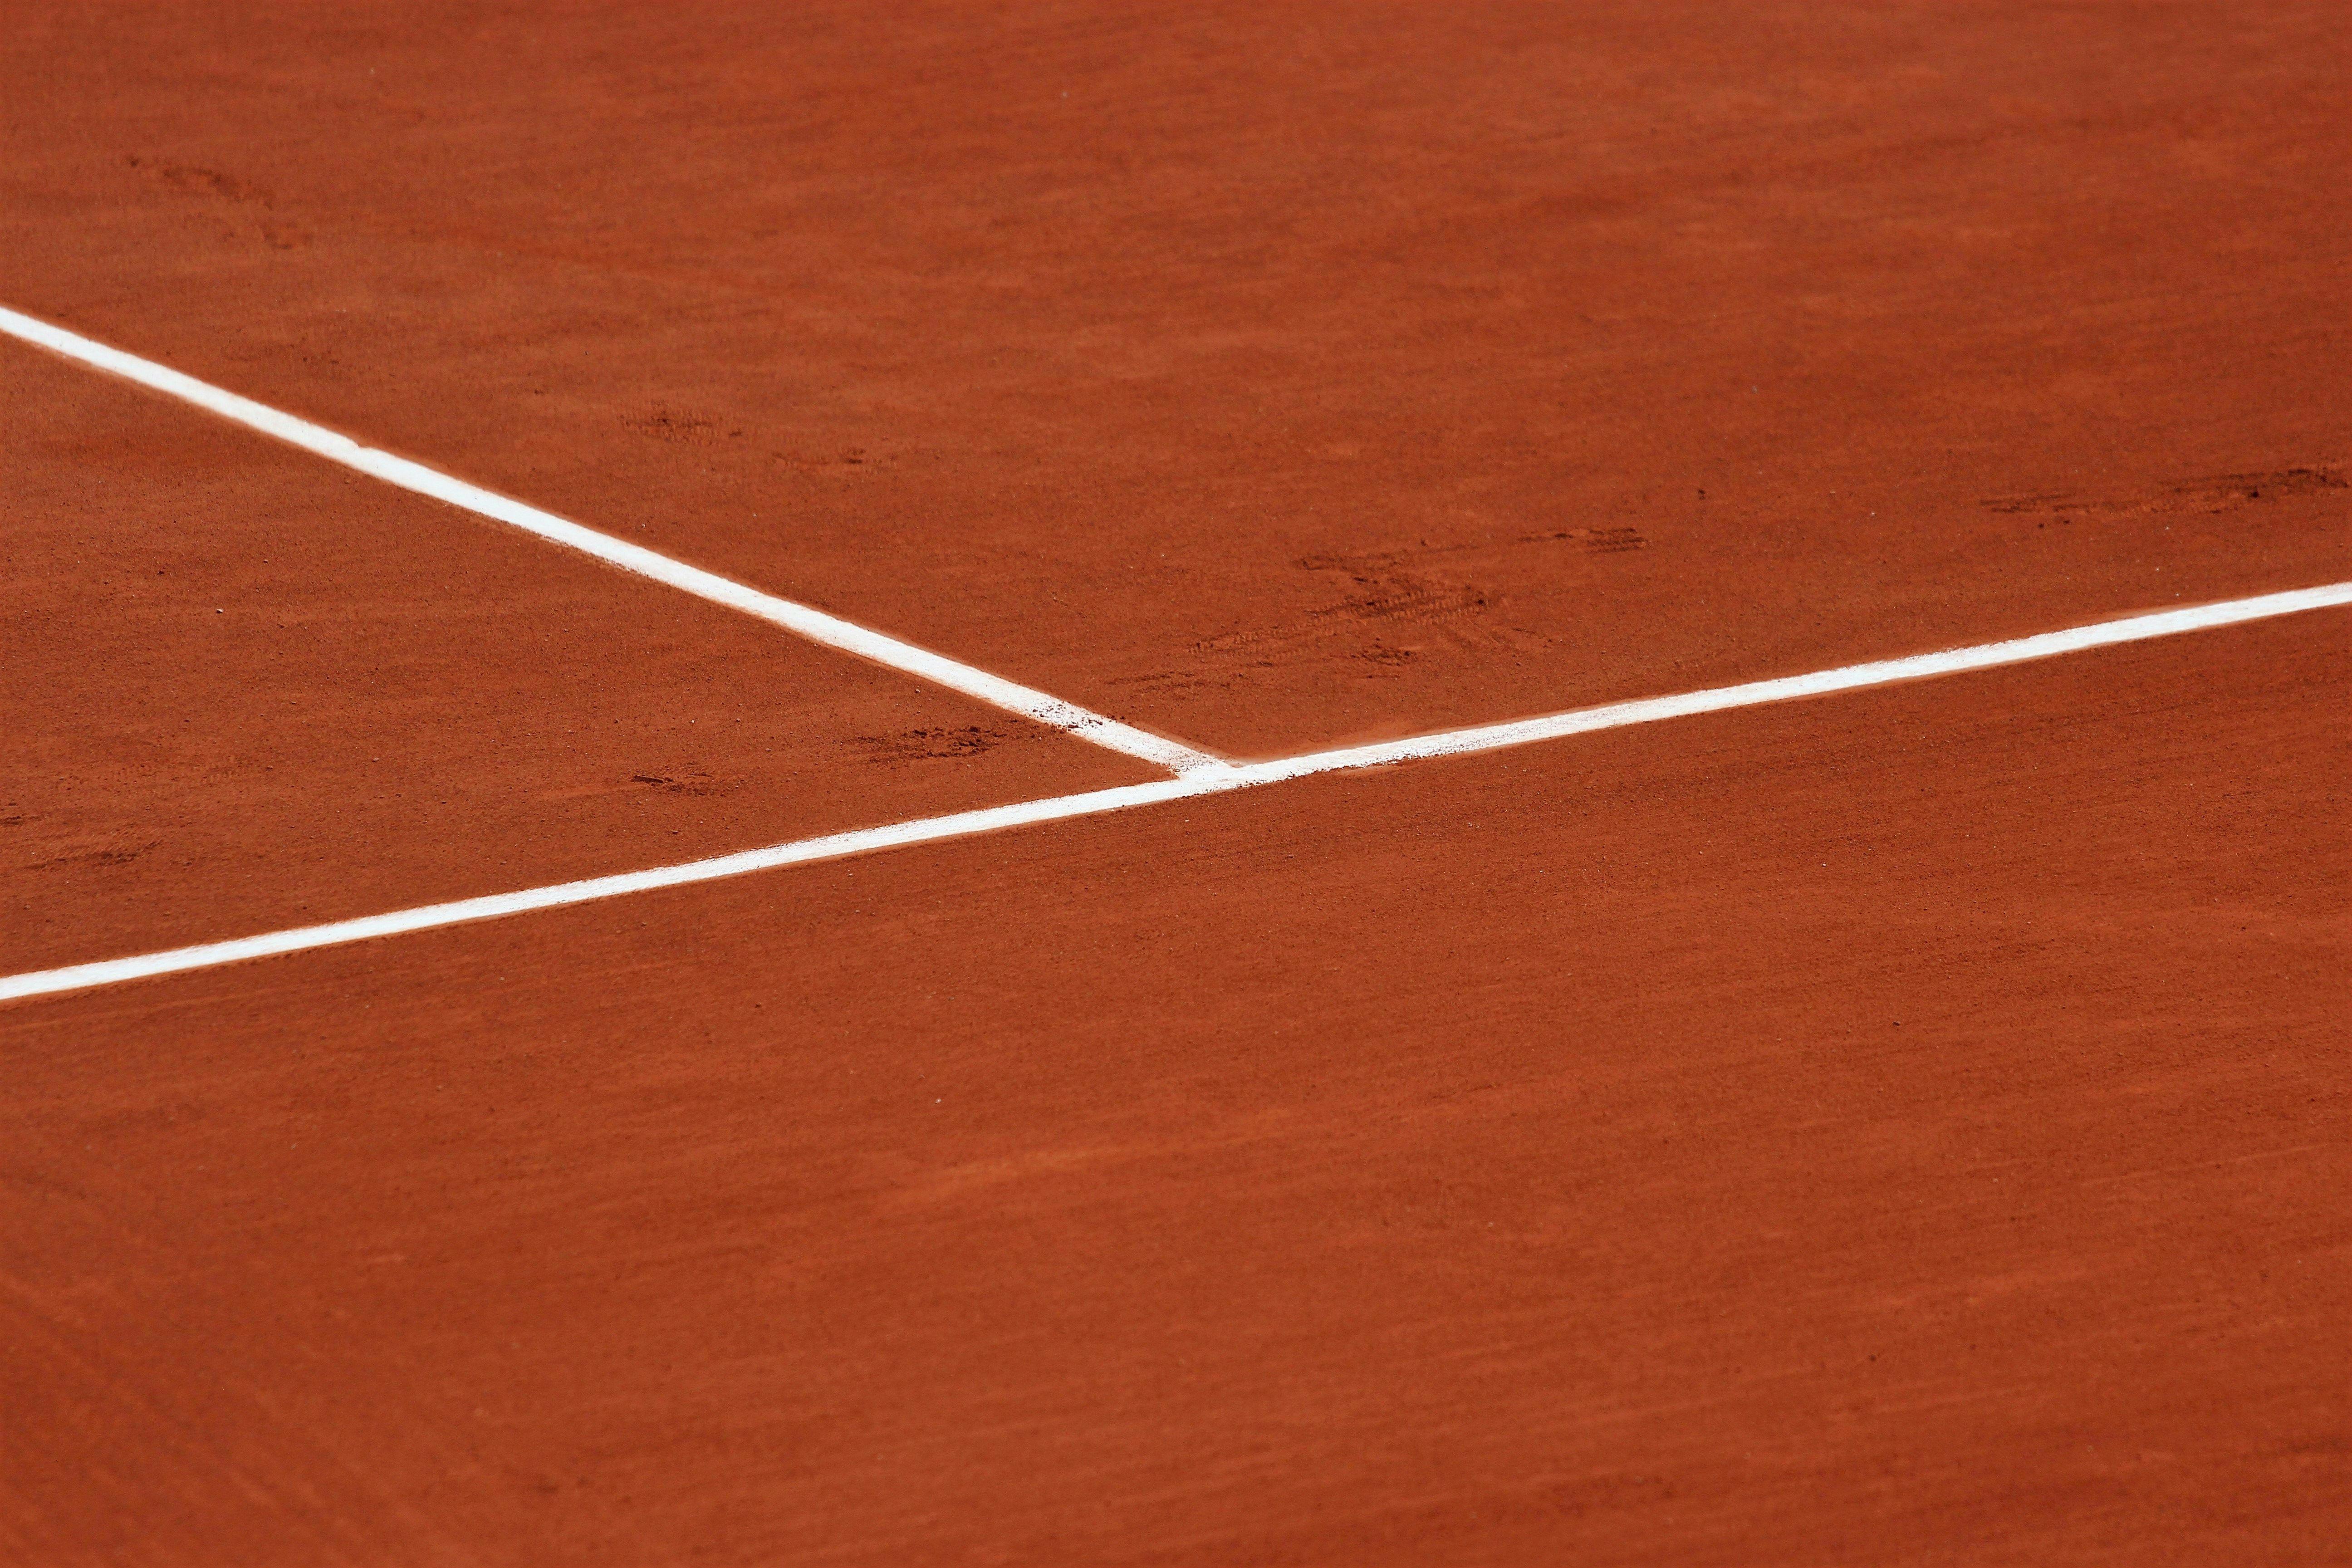 tennis line markings